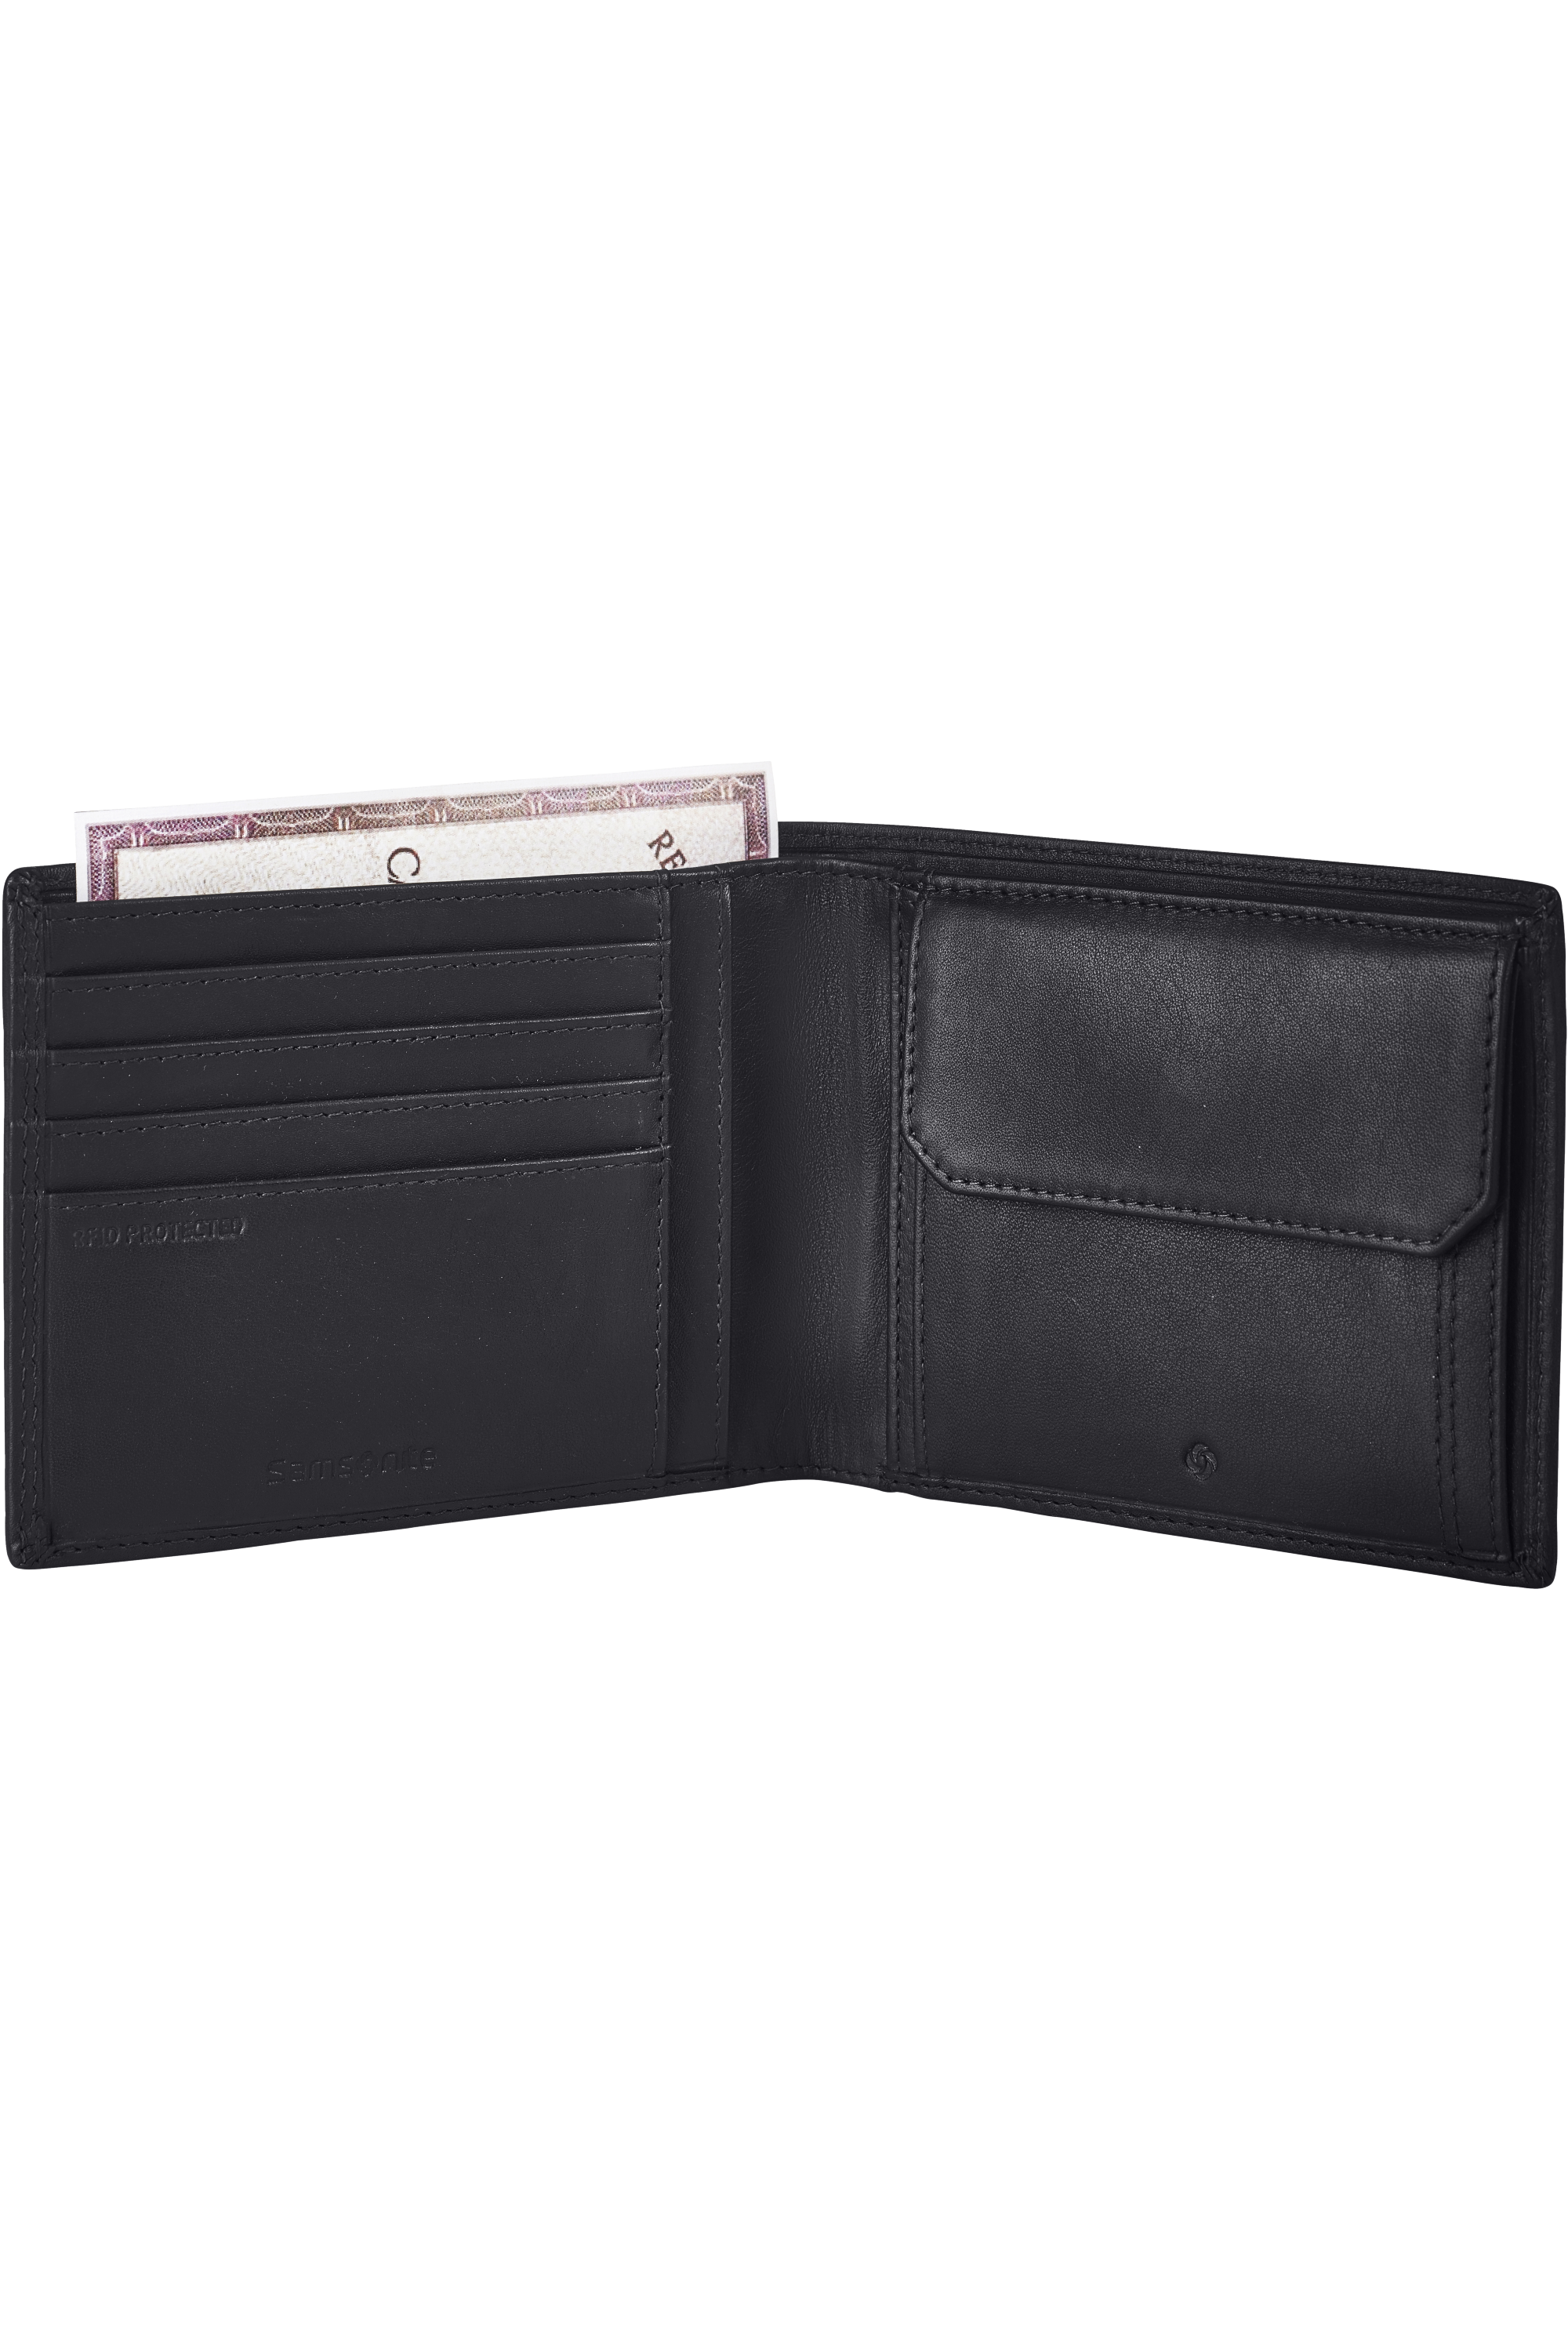 Mode & Accessoires Taschen Kleinlederwaren Portemonnaies Samsonite Attack Coin Wallet with extra Flap 